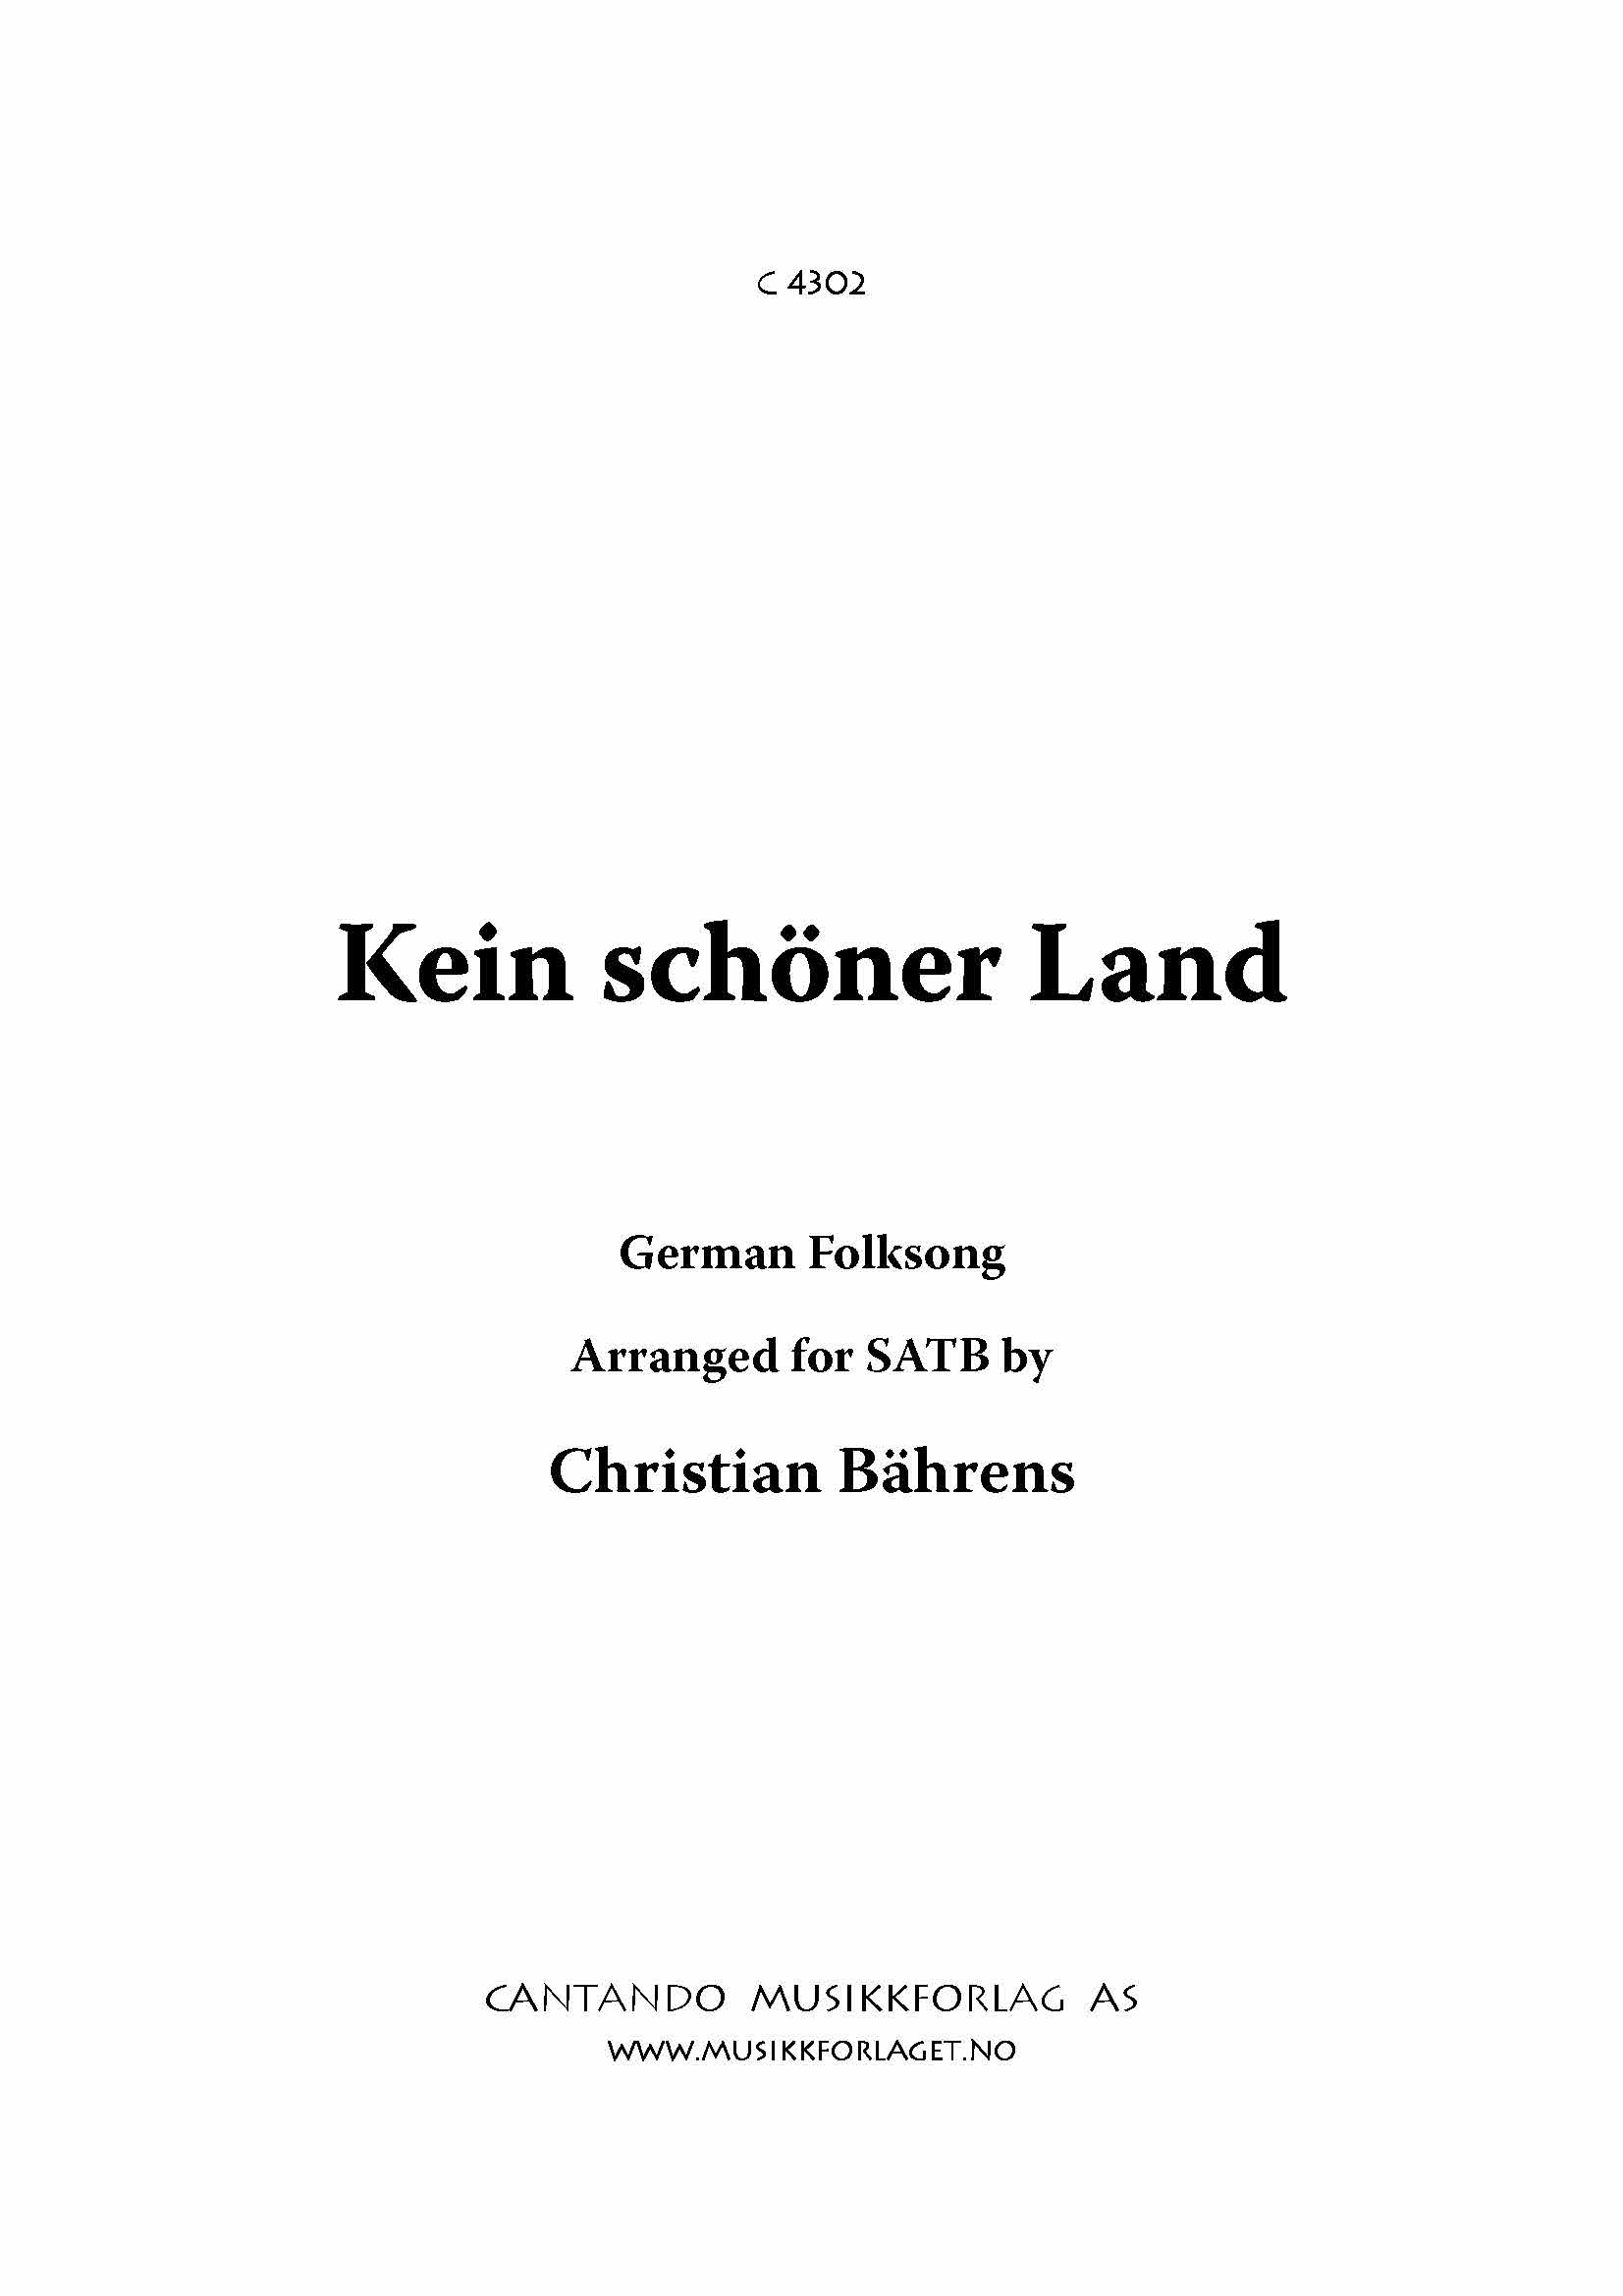 Kein schöner Land - German Folksong